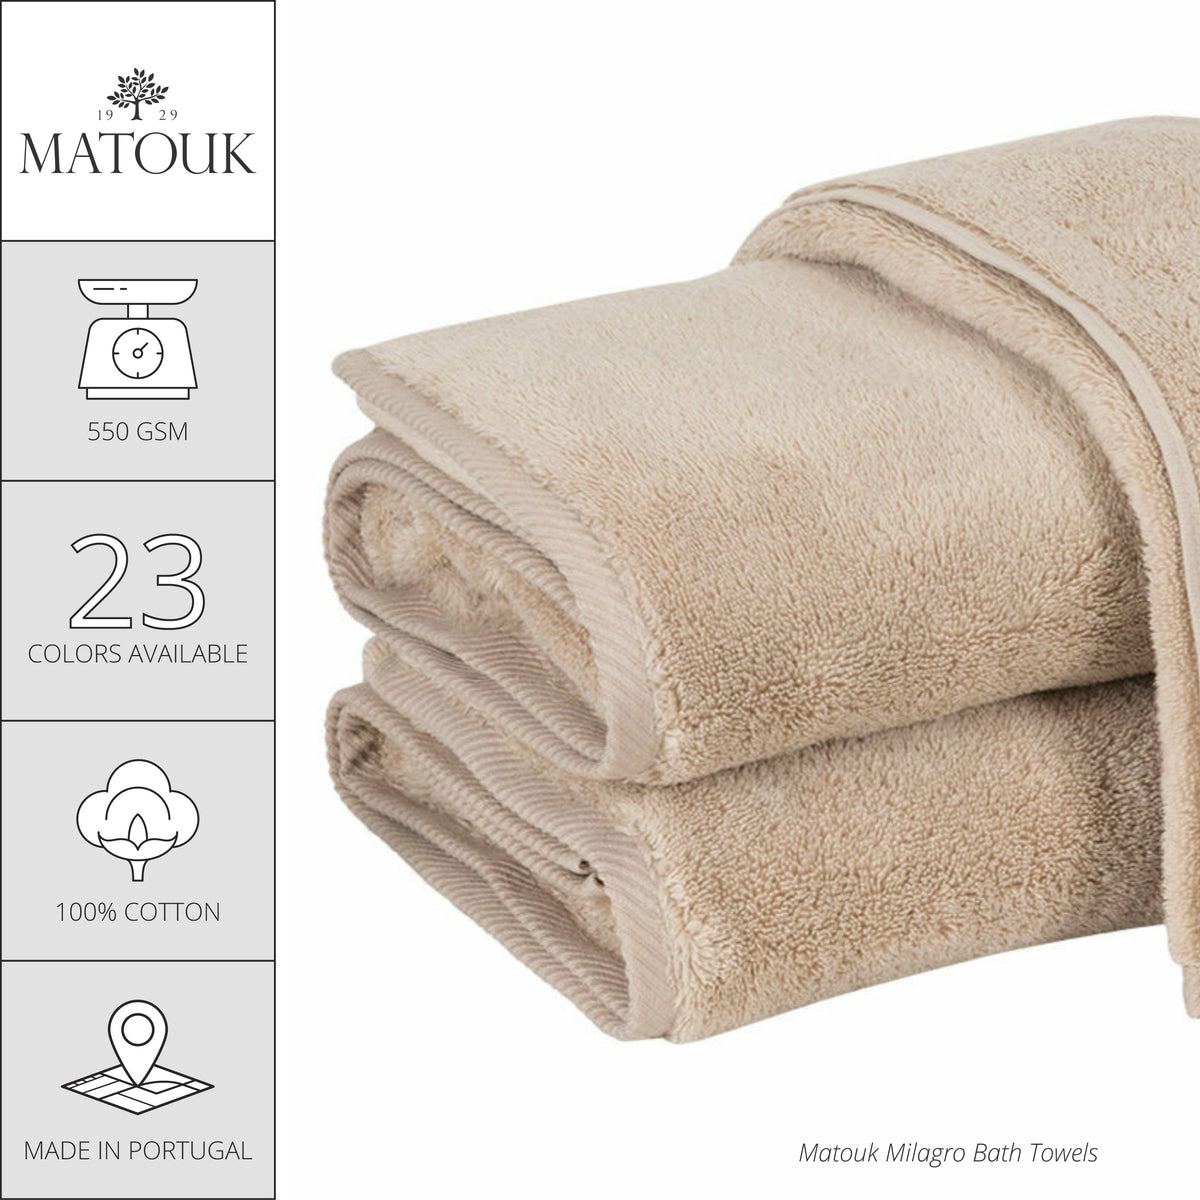 Matouk Milagro Bath Towels and Mats - Navy